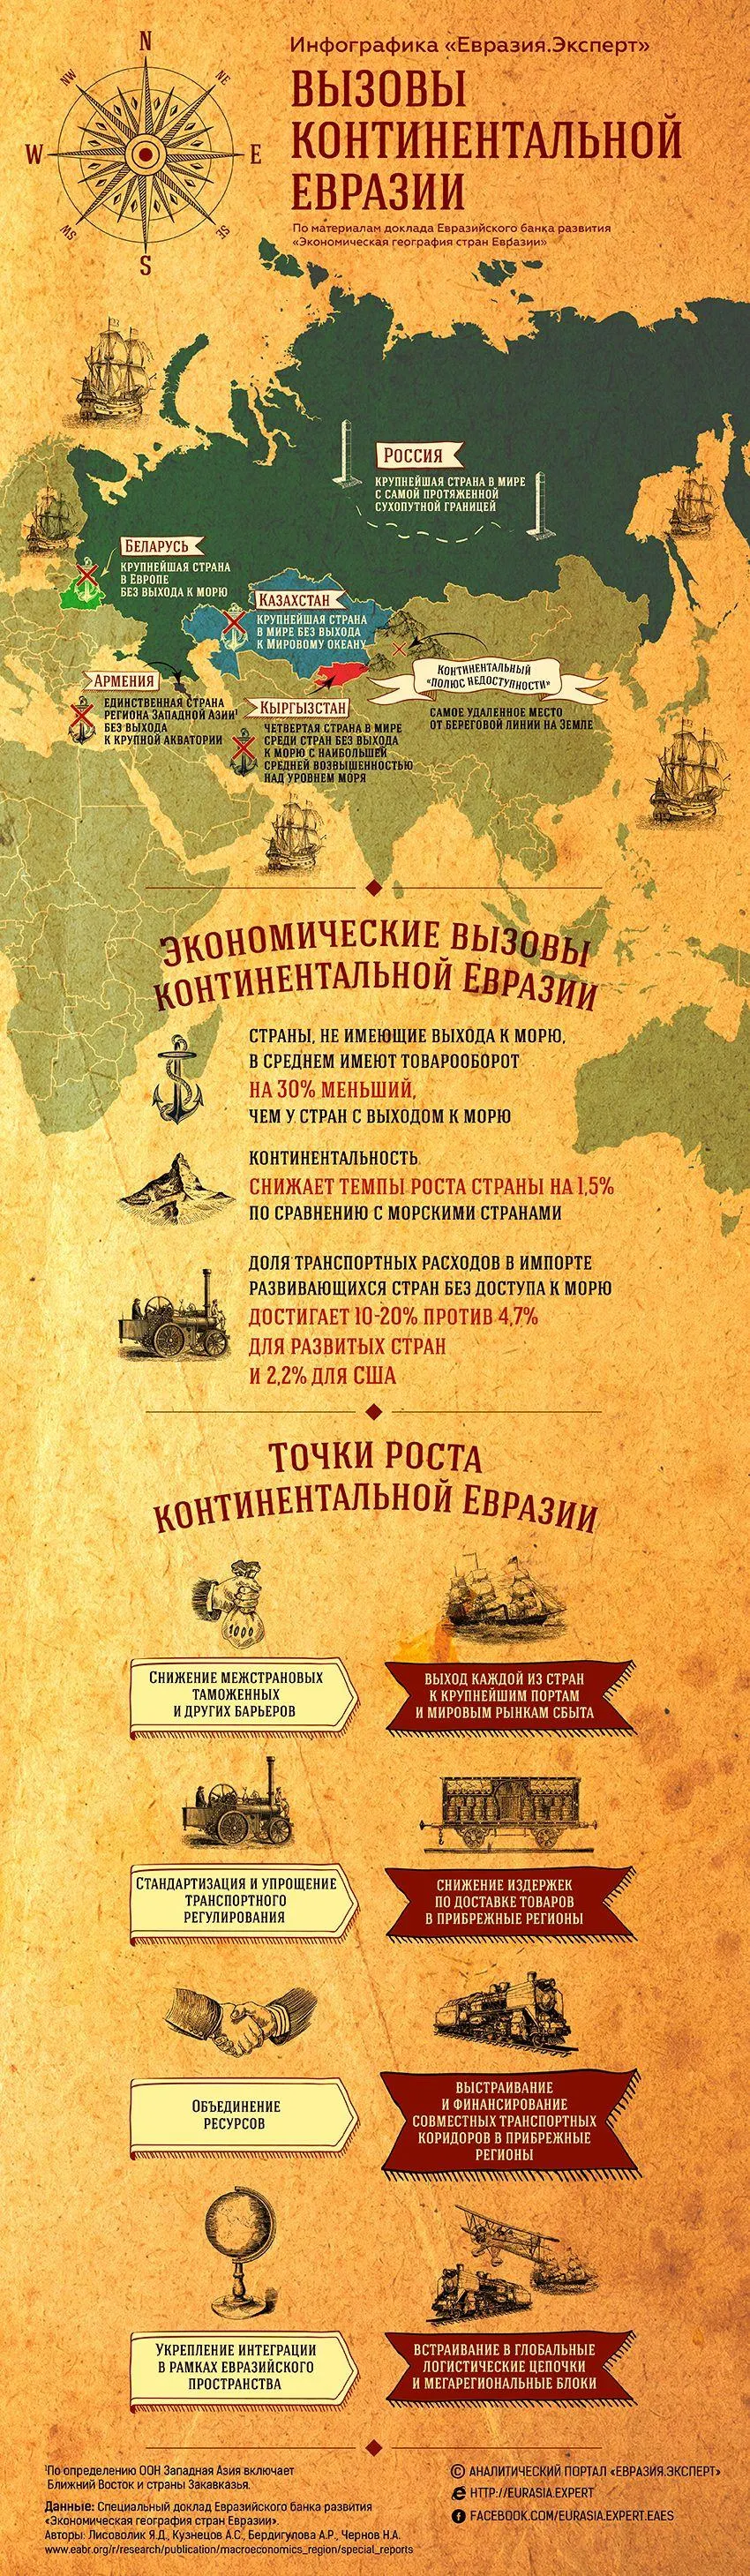 Инфографика: Уникальность экономической географии Евразии